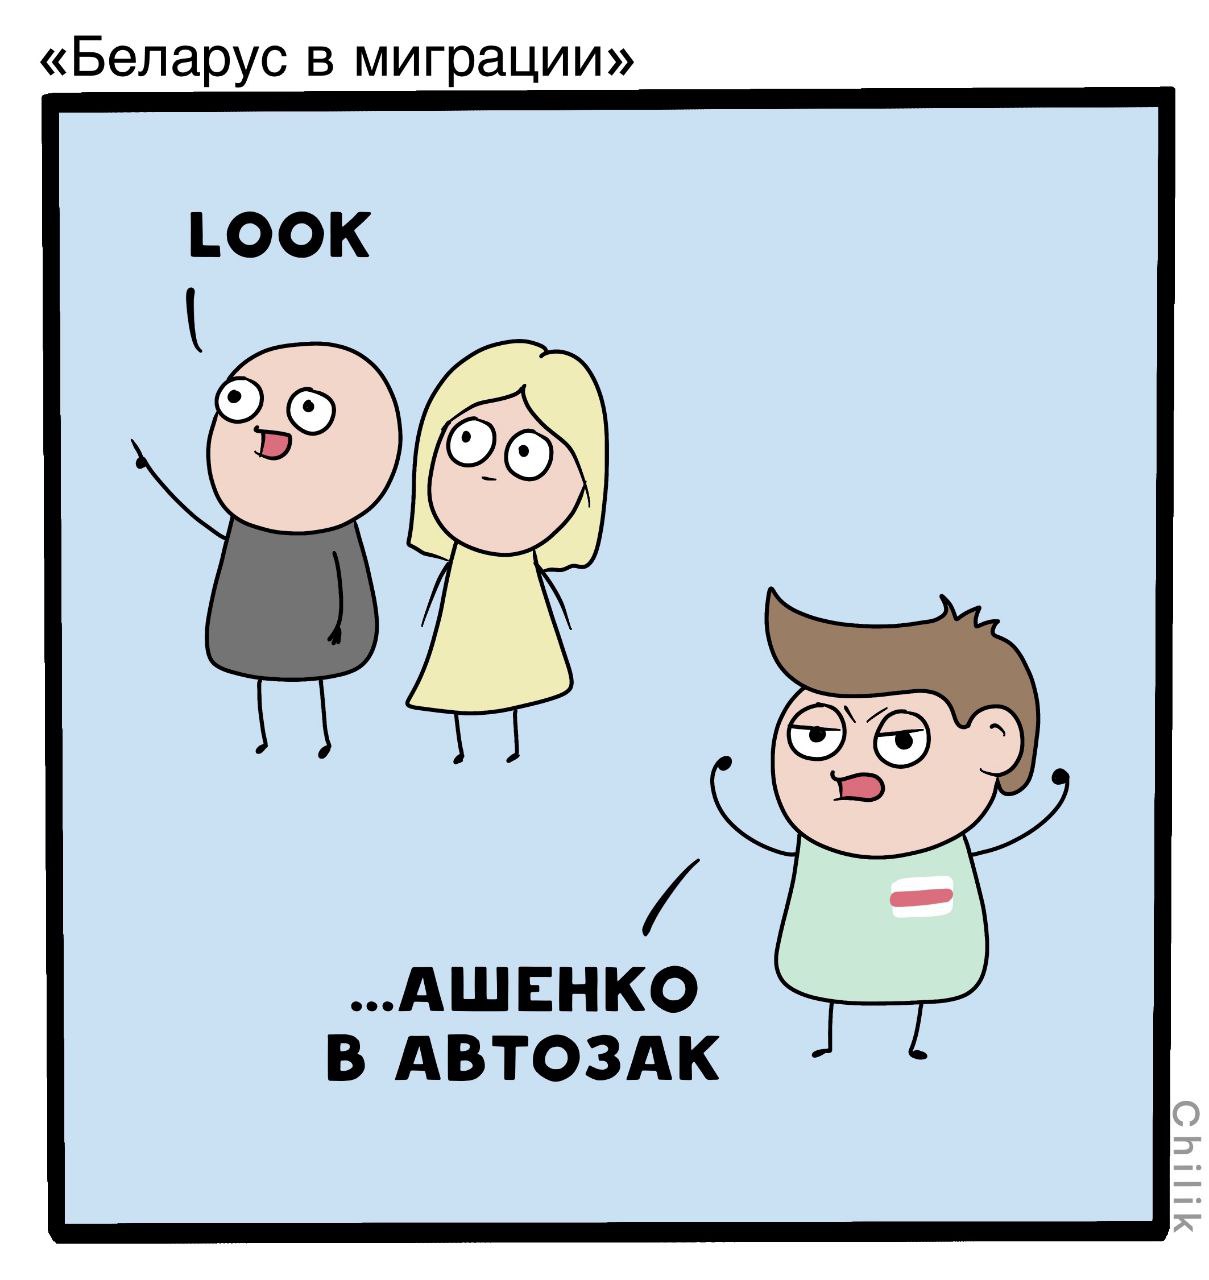 1209x1280, 110 Kb / Беларус, Лукашенко, политота